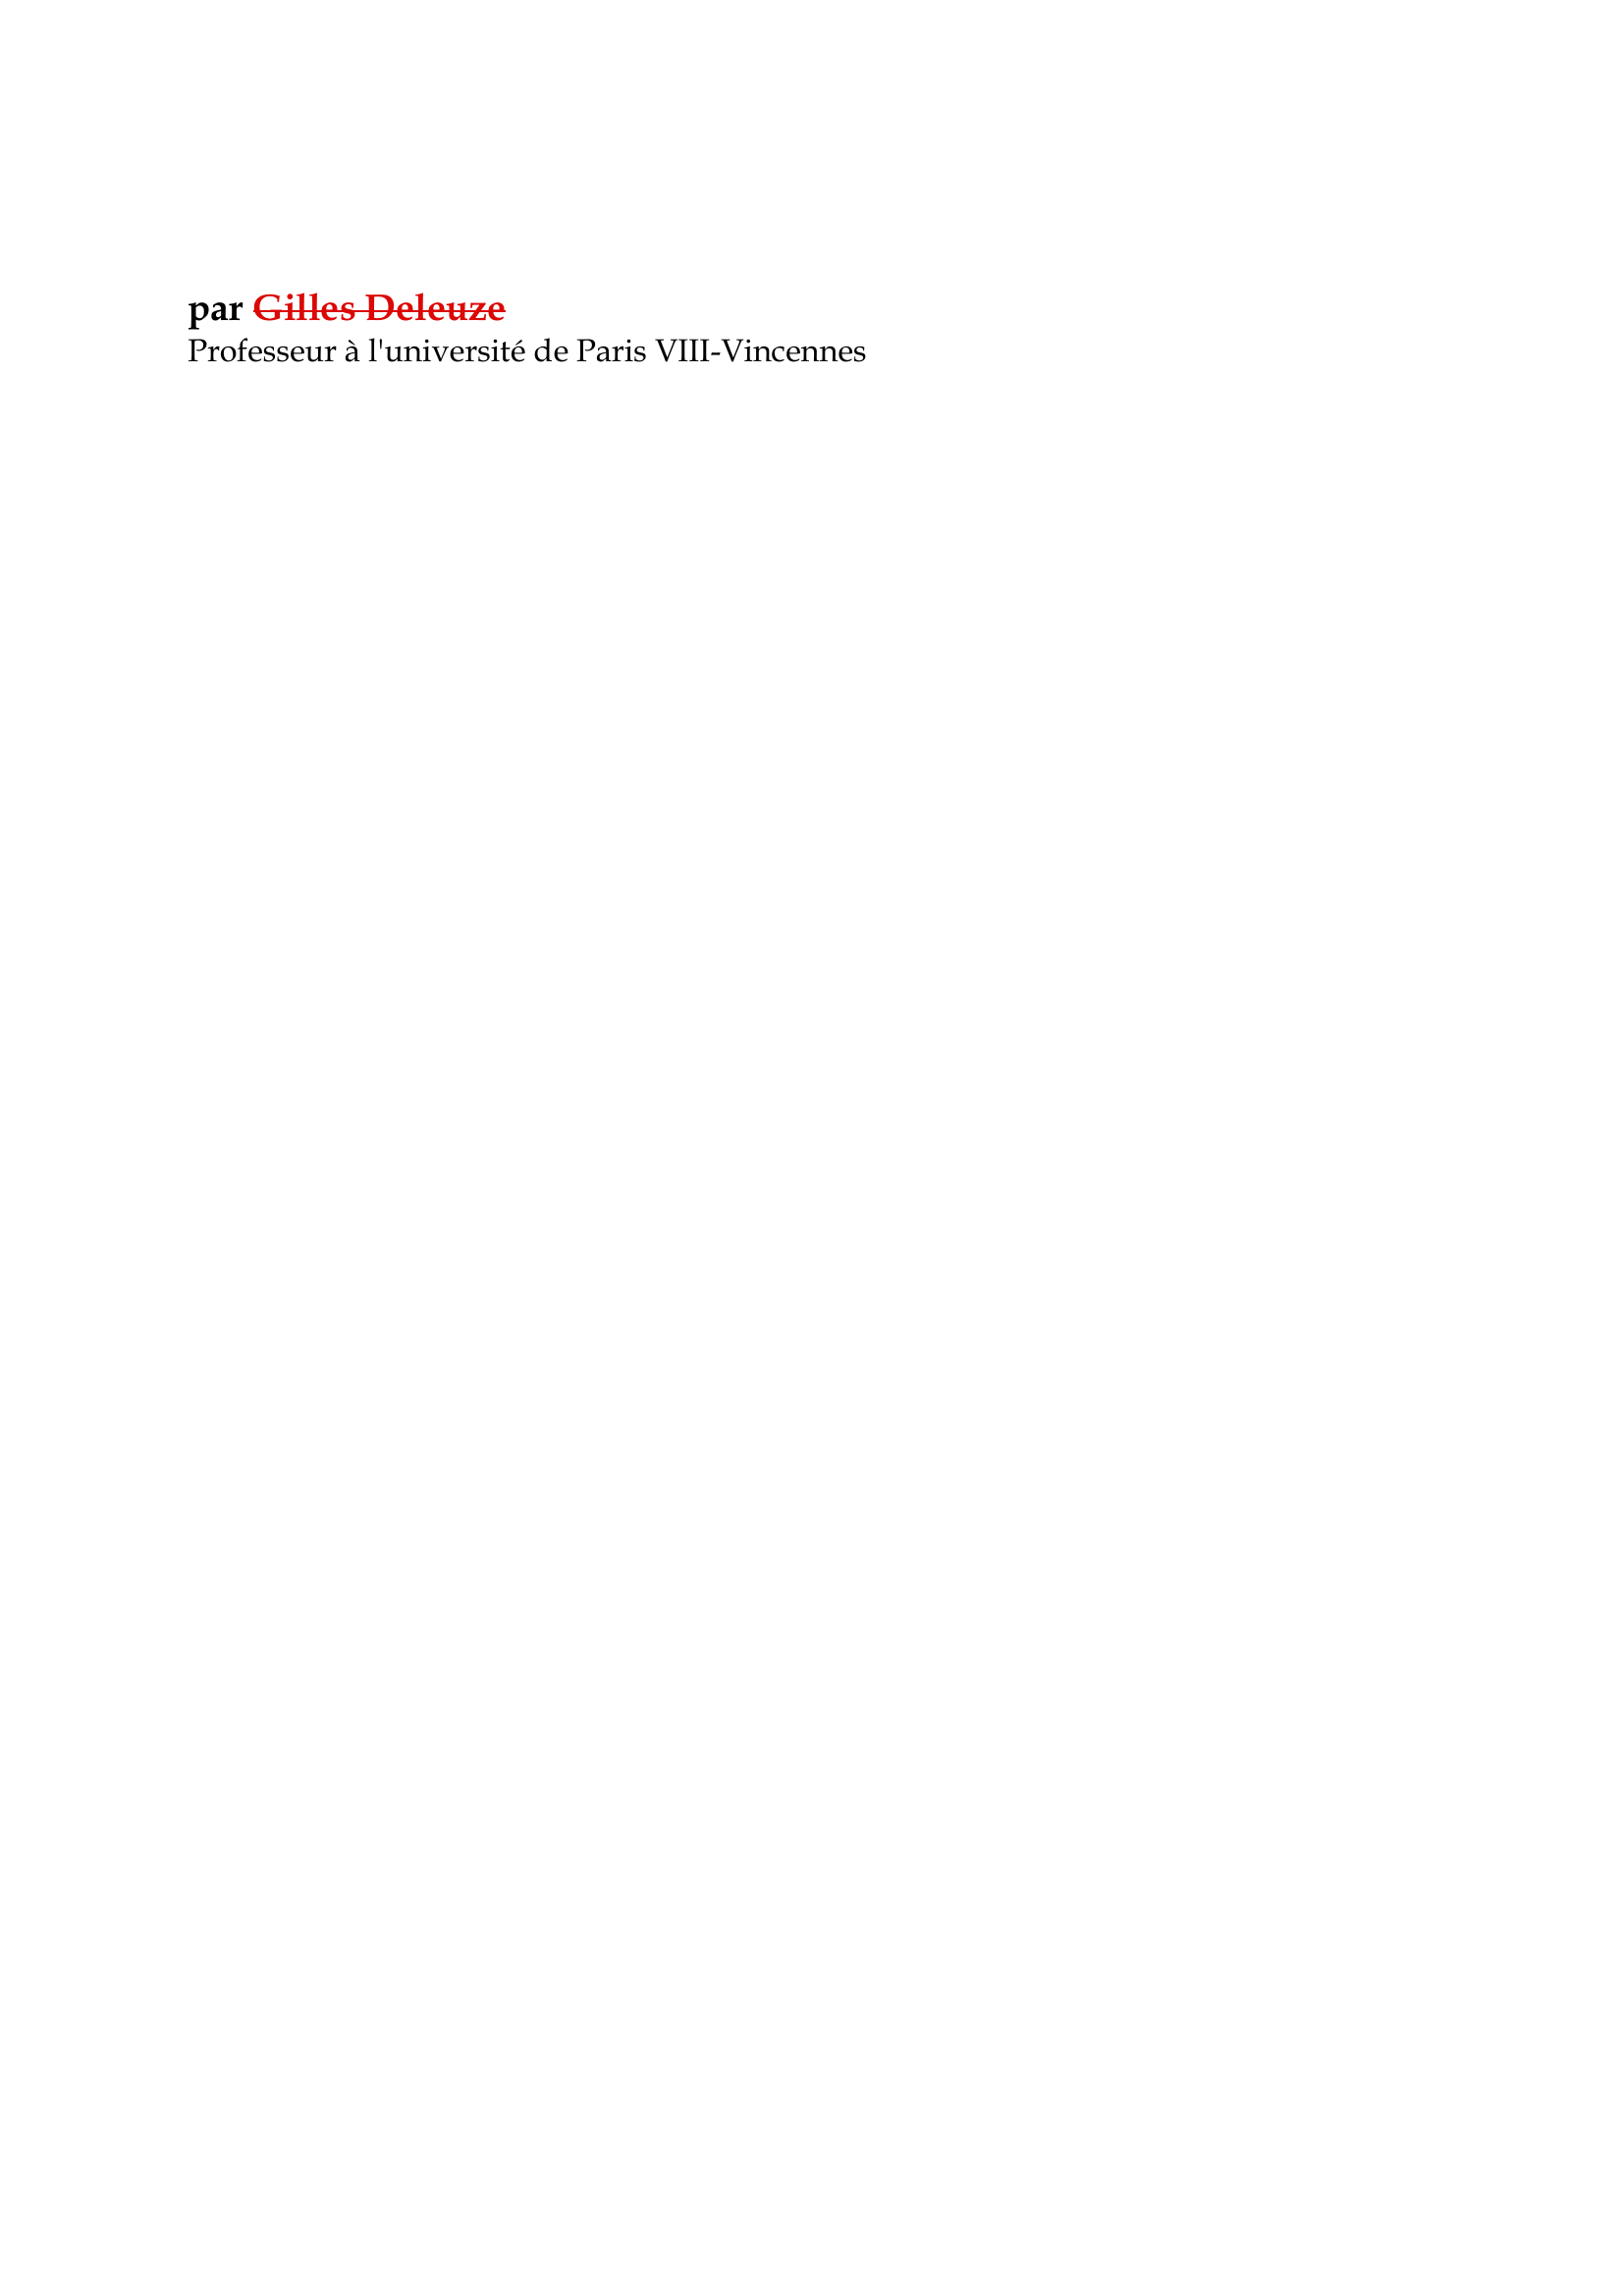 Prévisualisation du document Henri Bergson

par Gilles Deleuze
Professeur à l'université de Paris VIII-Vincennes

Un grand